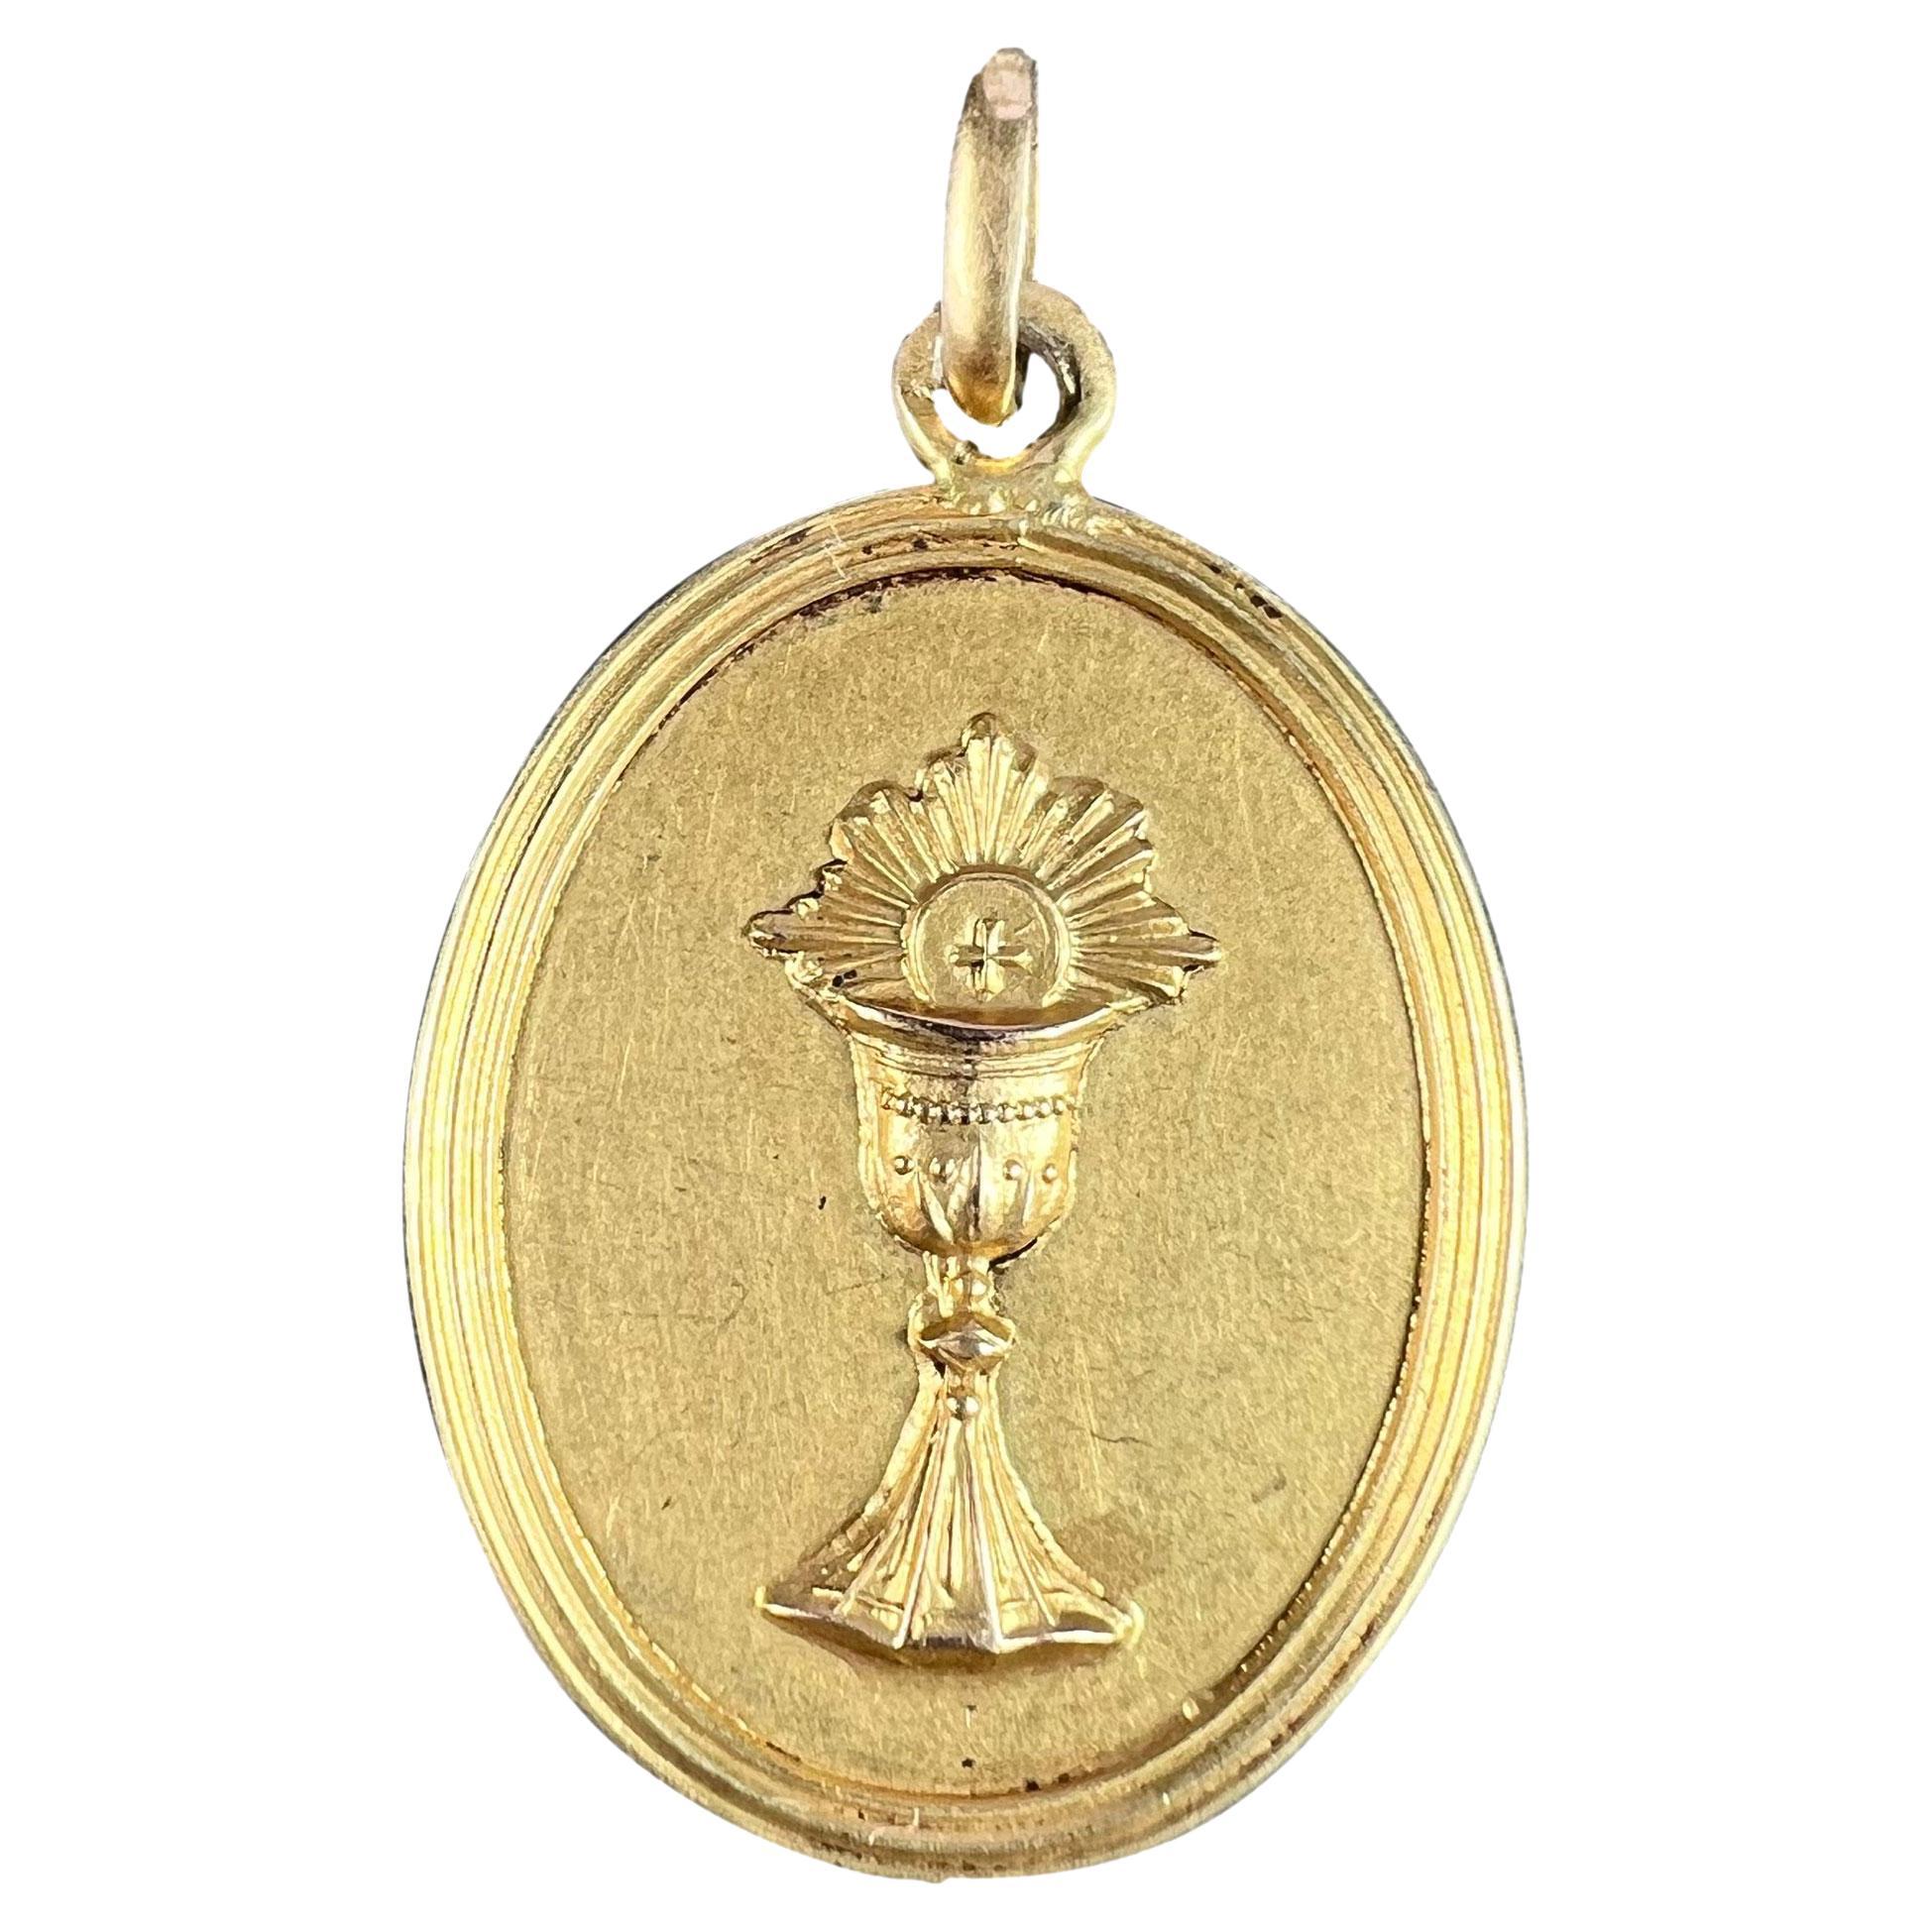 Pendentif médaille en or jaune 18K pour la première communion française